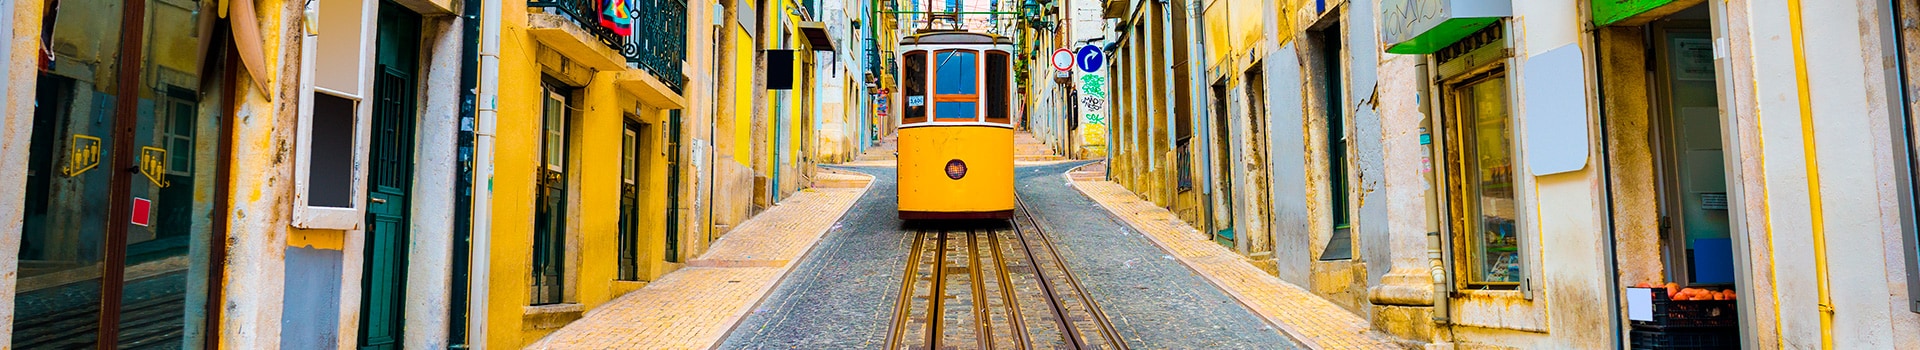 Amesterdao - Lisboa